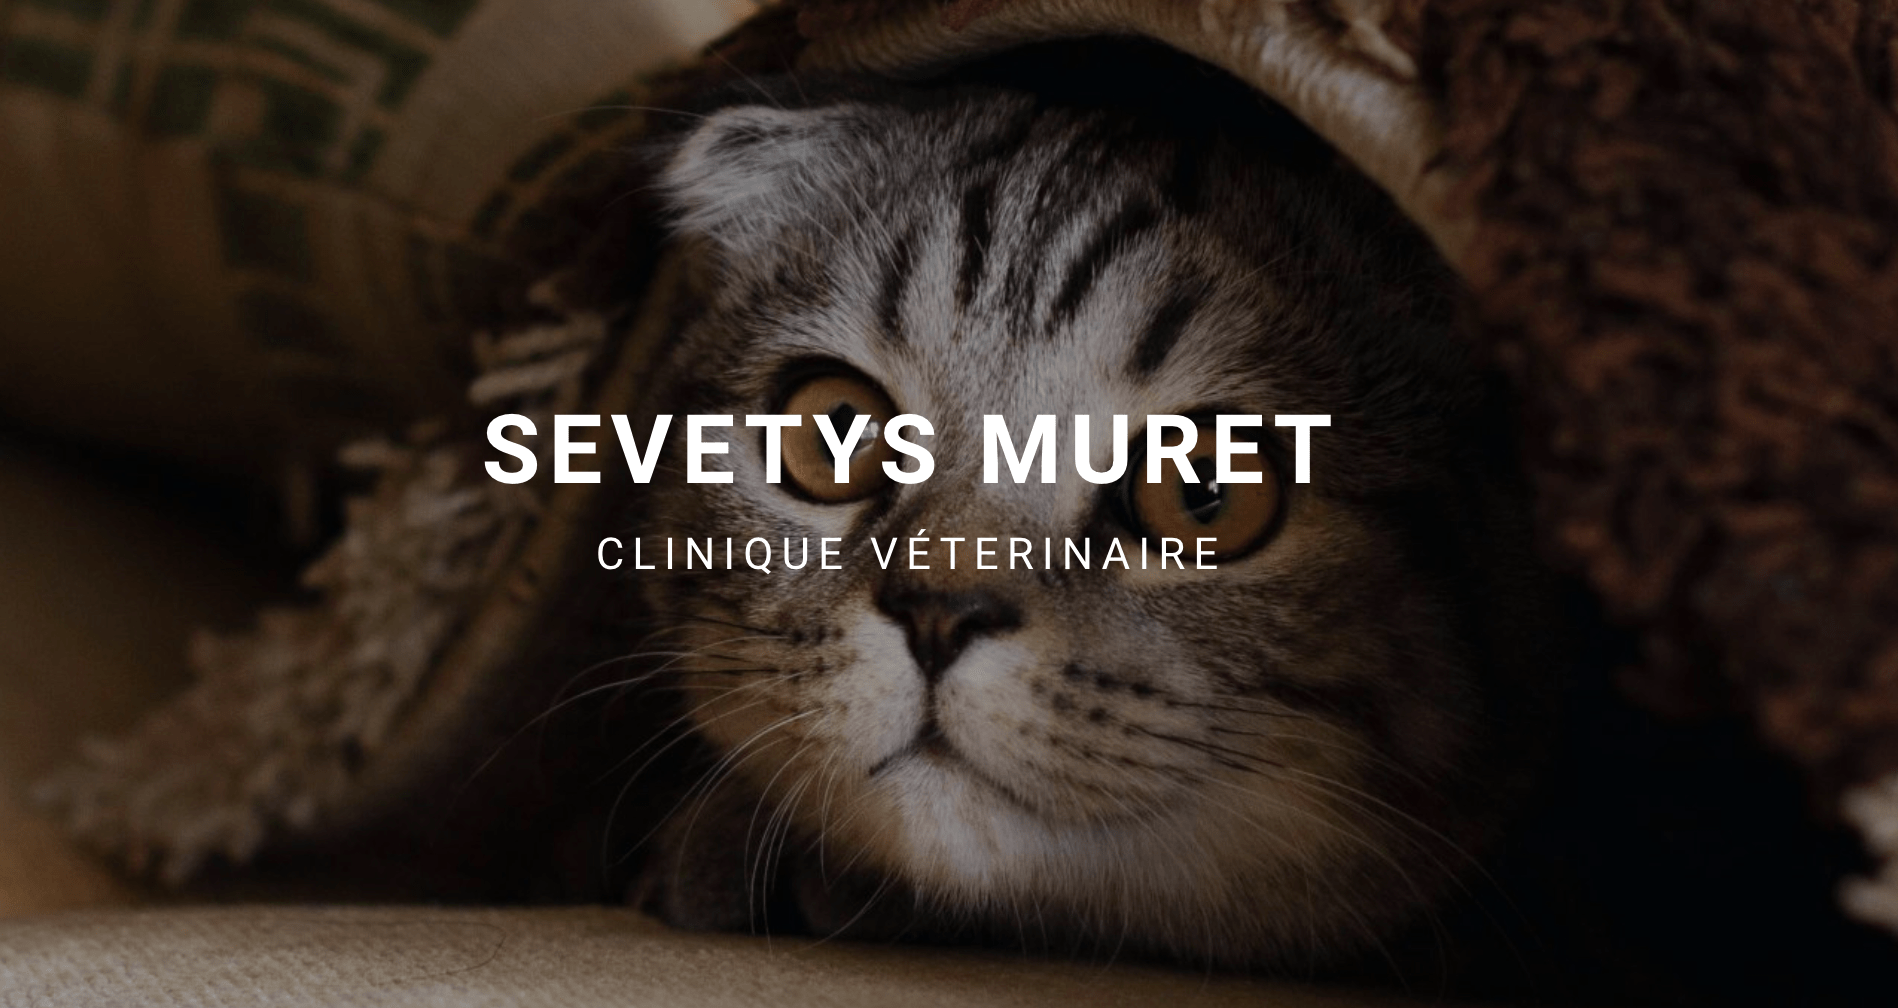 Clinique Vétérinaire Sevetys Muret